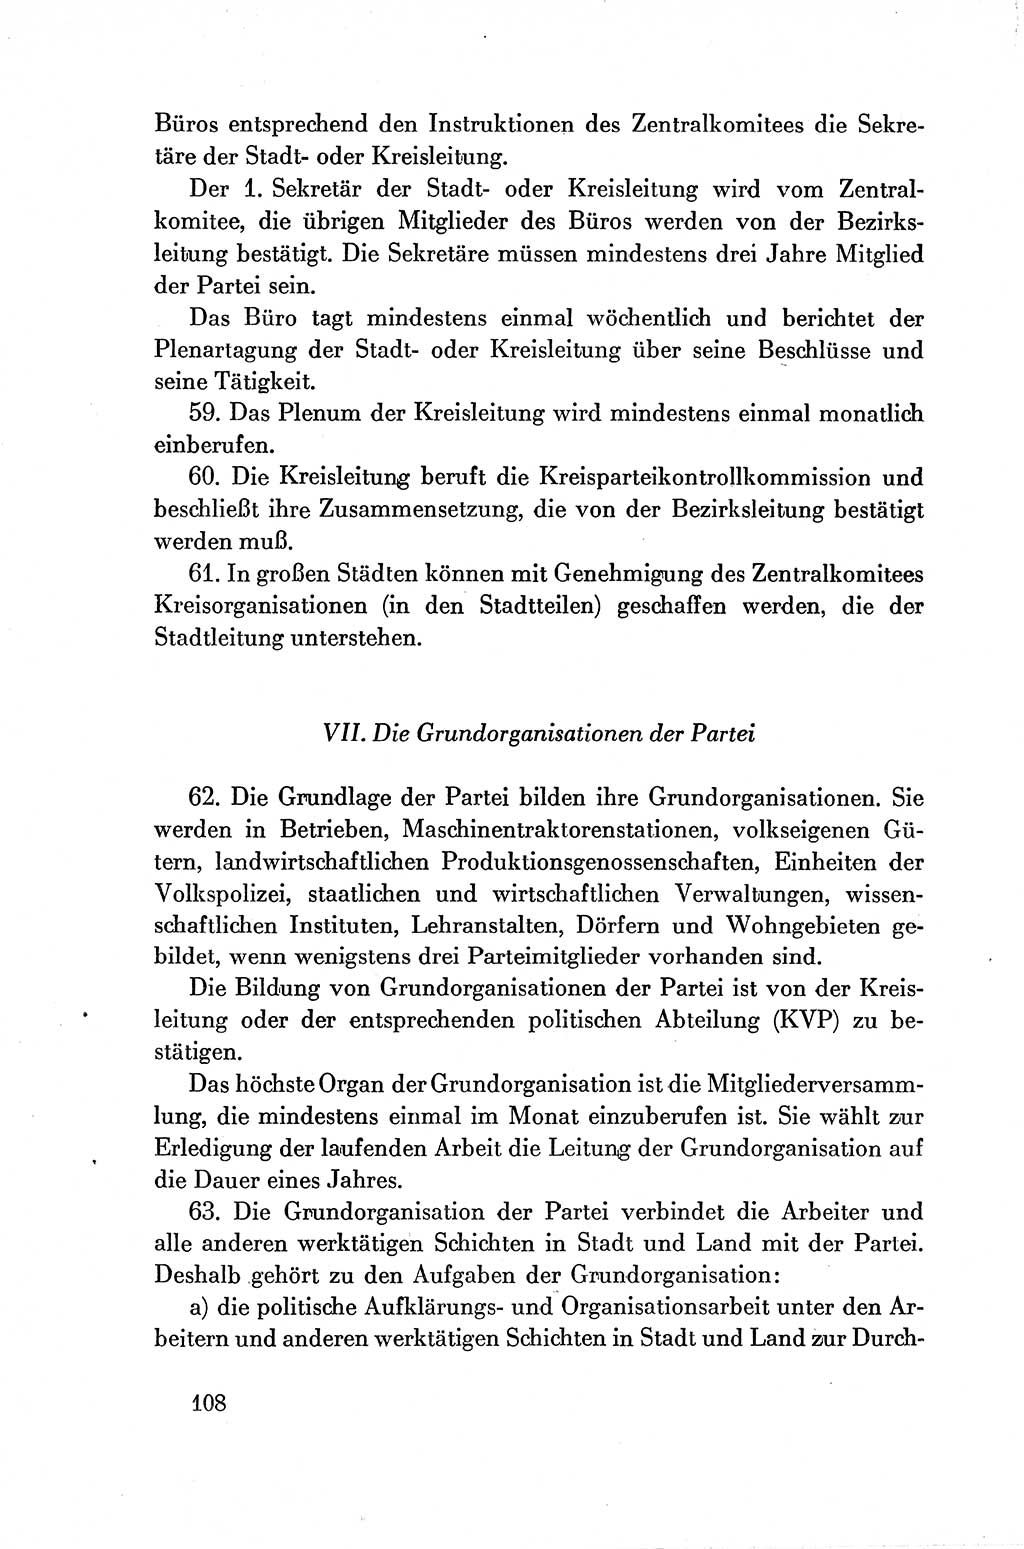 Dokumente der Sozialistischen Einheitspartei Deutschlands (SED) [Deutsche Demokratische Republik (DDR)] 1954-1955, Seite 108 (Dok. SED DDR 1954-1955, S. 108)